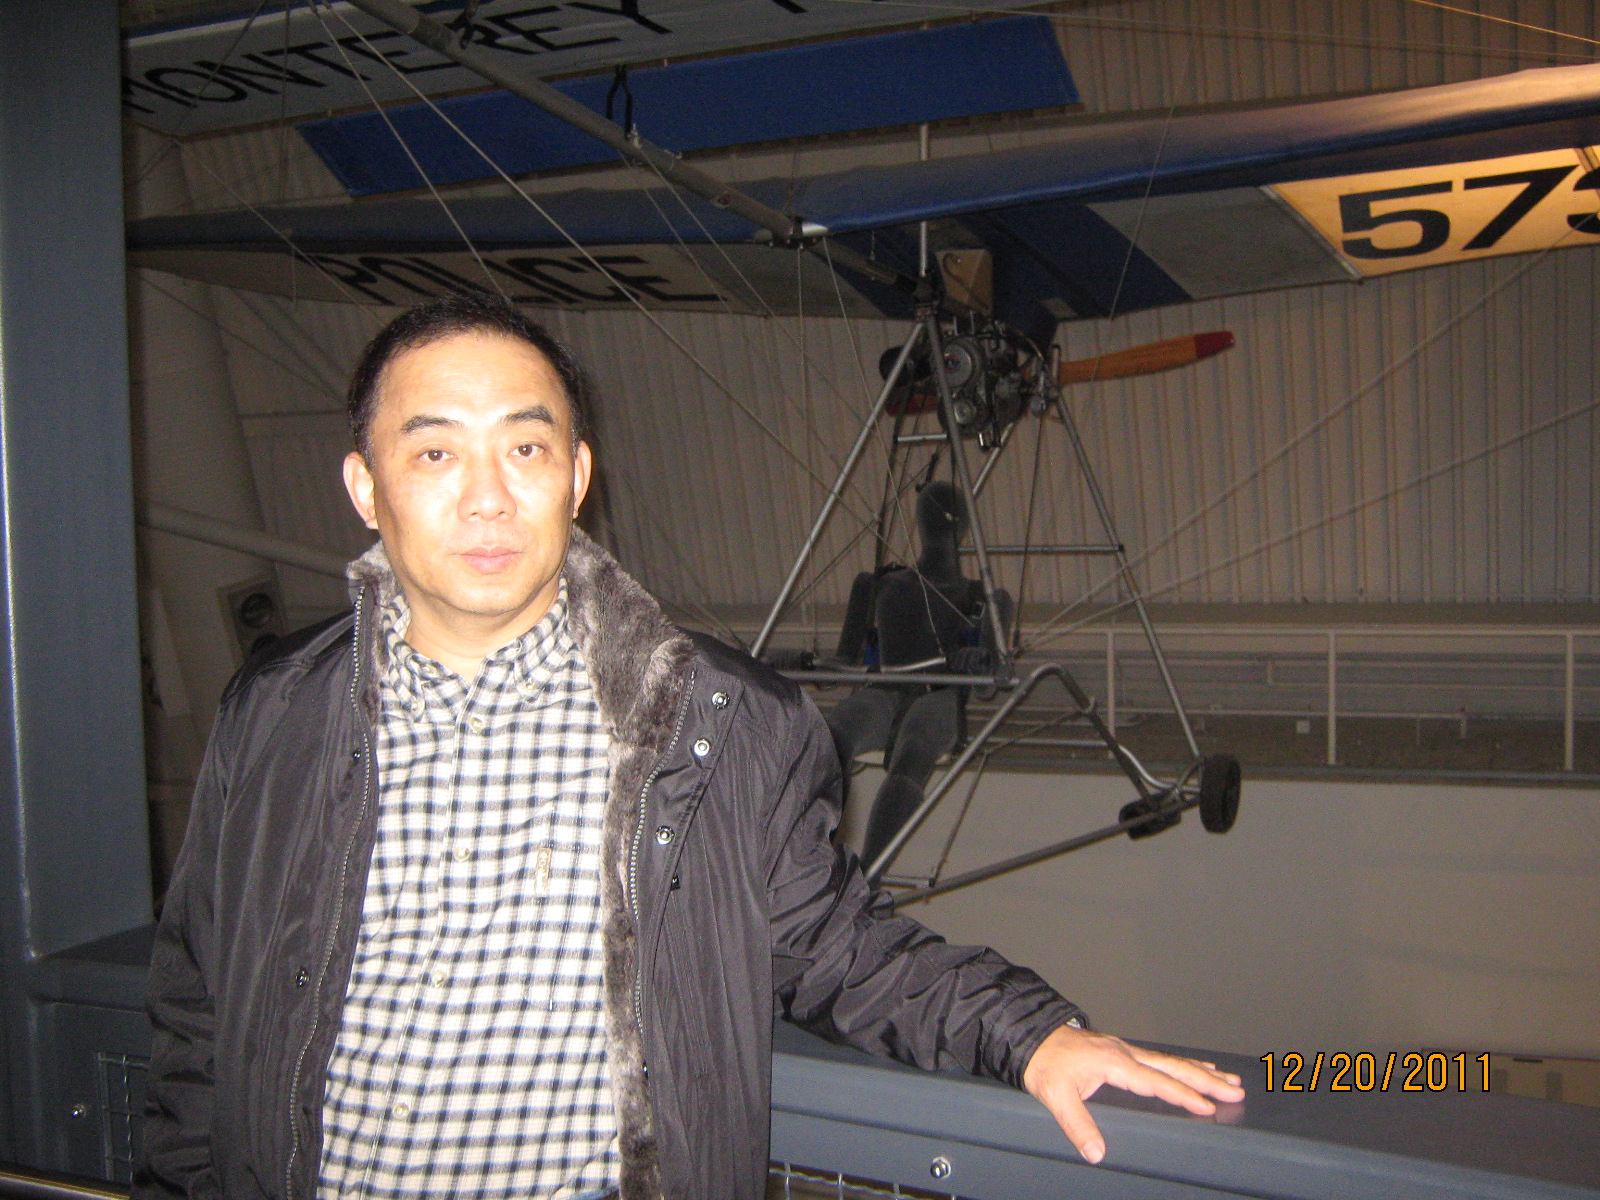 IMG_1854.JPG : Dec 20, 2011 Air and Space Museum again